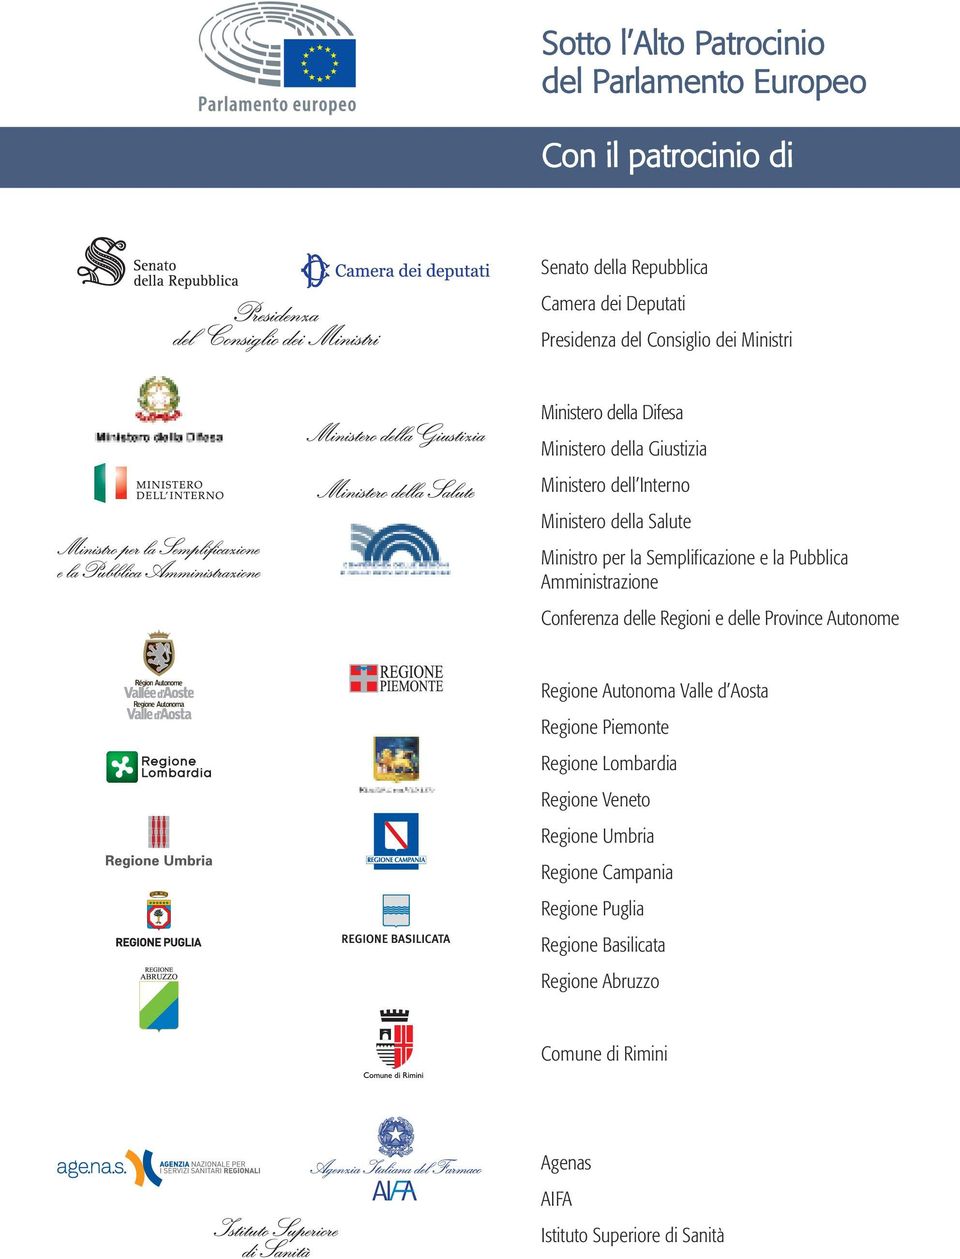 Pubblica Amministrazione Conferenza delle Regioni e delle Province Autonome Regione Autonoma Valle d Aosta Regione Piemonte Regione Lombardia